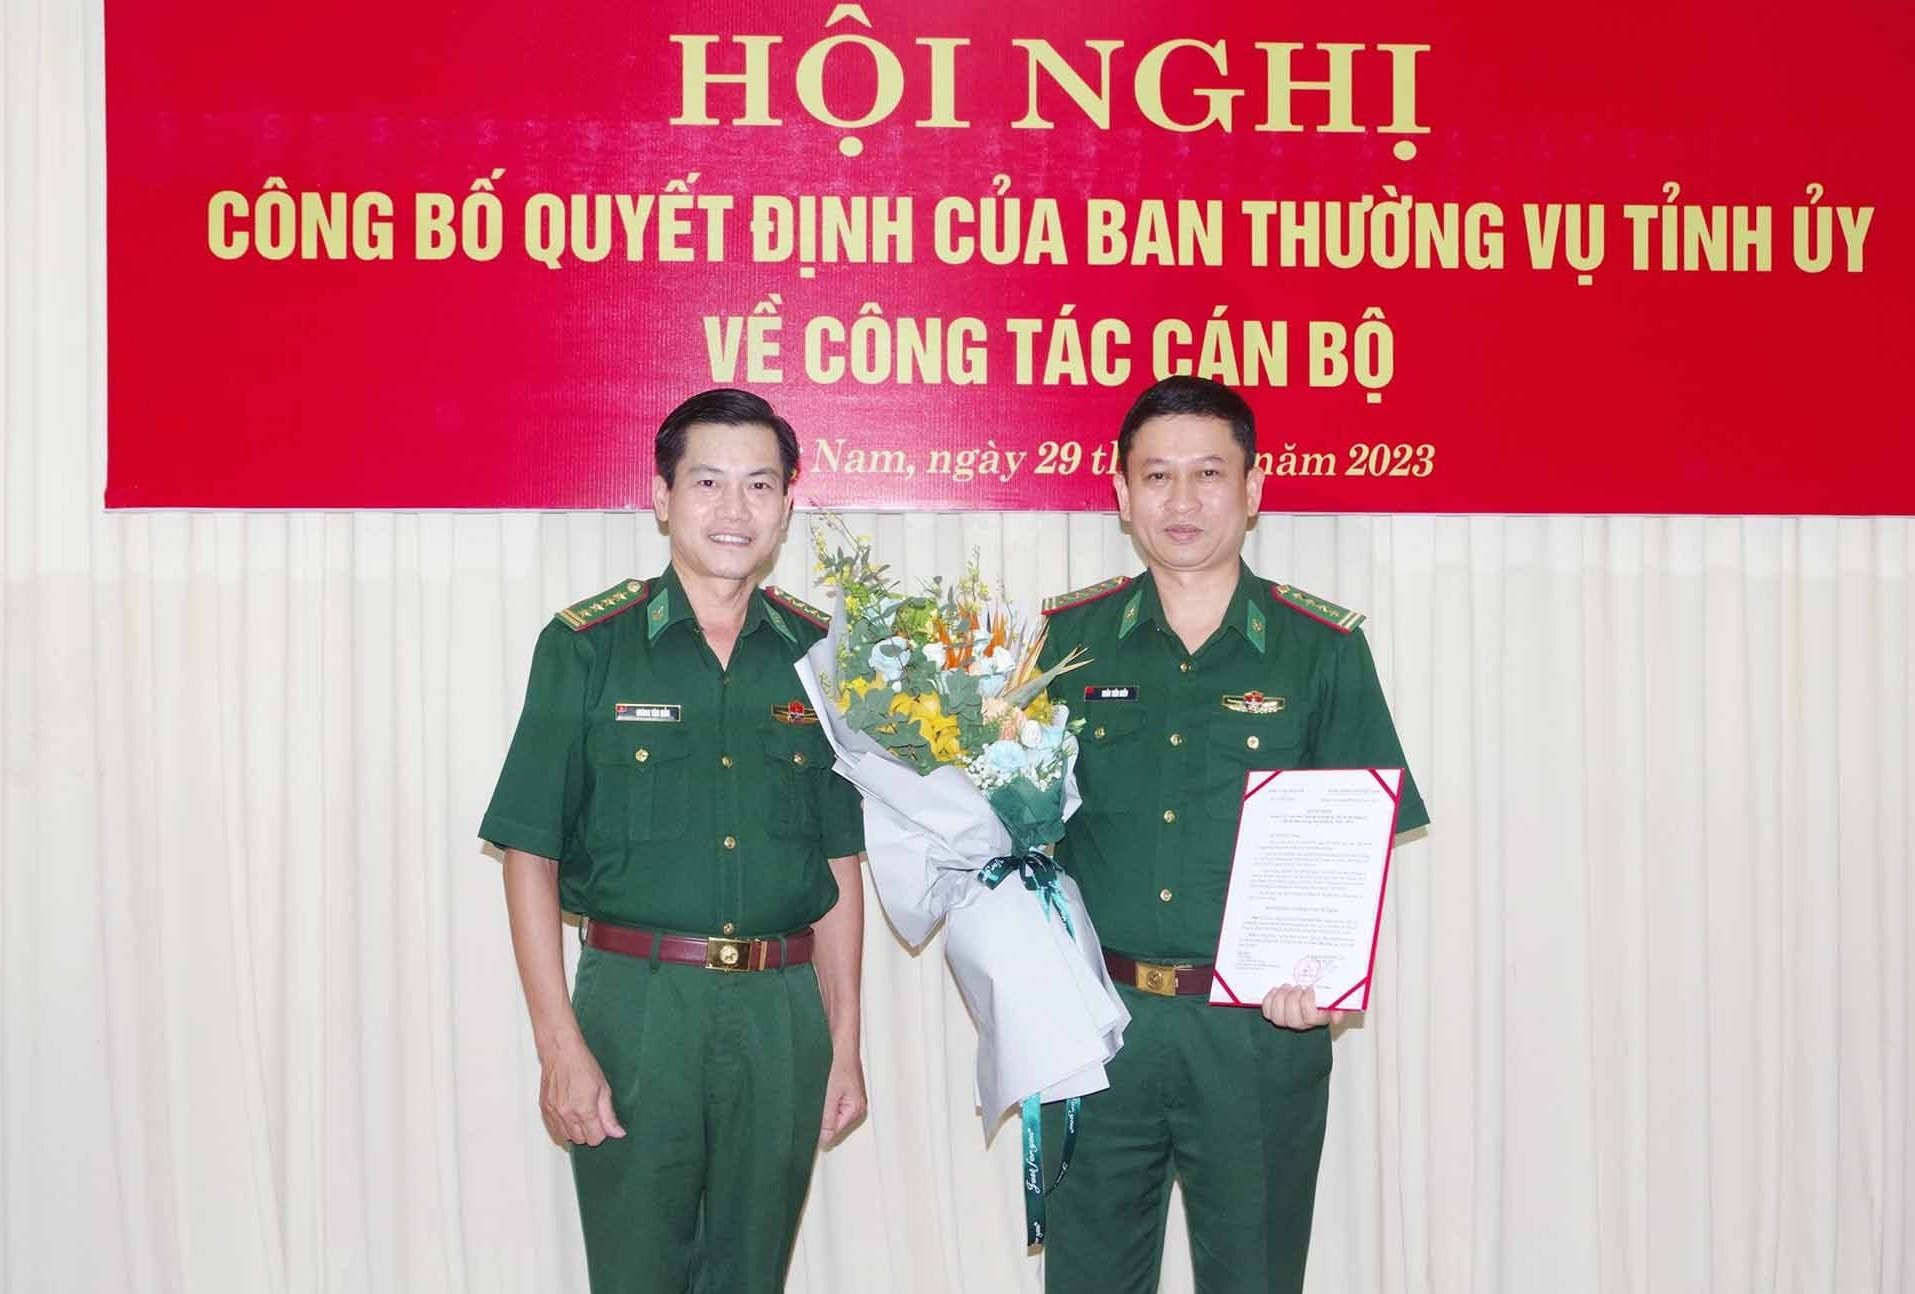 Đại tá Hoàng Văn Mẫn – Bí thư Đảng ủy, Chính ủy BĐBP tỉnh tặng hoa chức mừng Đại tá Trần Tiến Hiền. Ảnh: HỒNG ANH